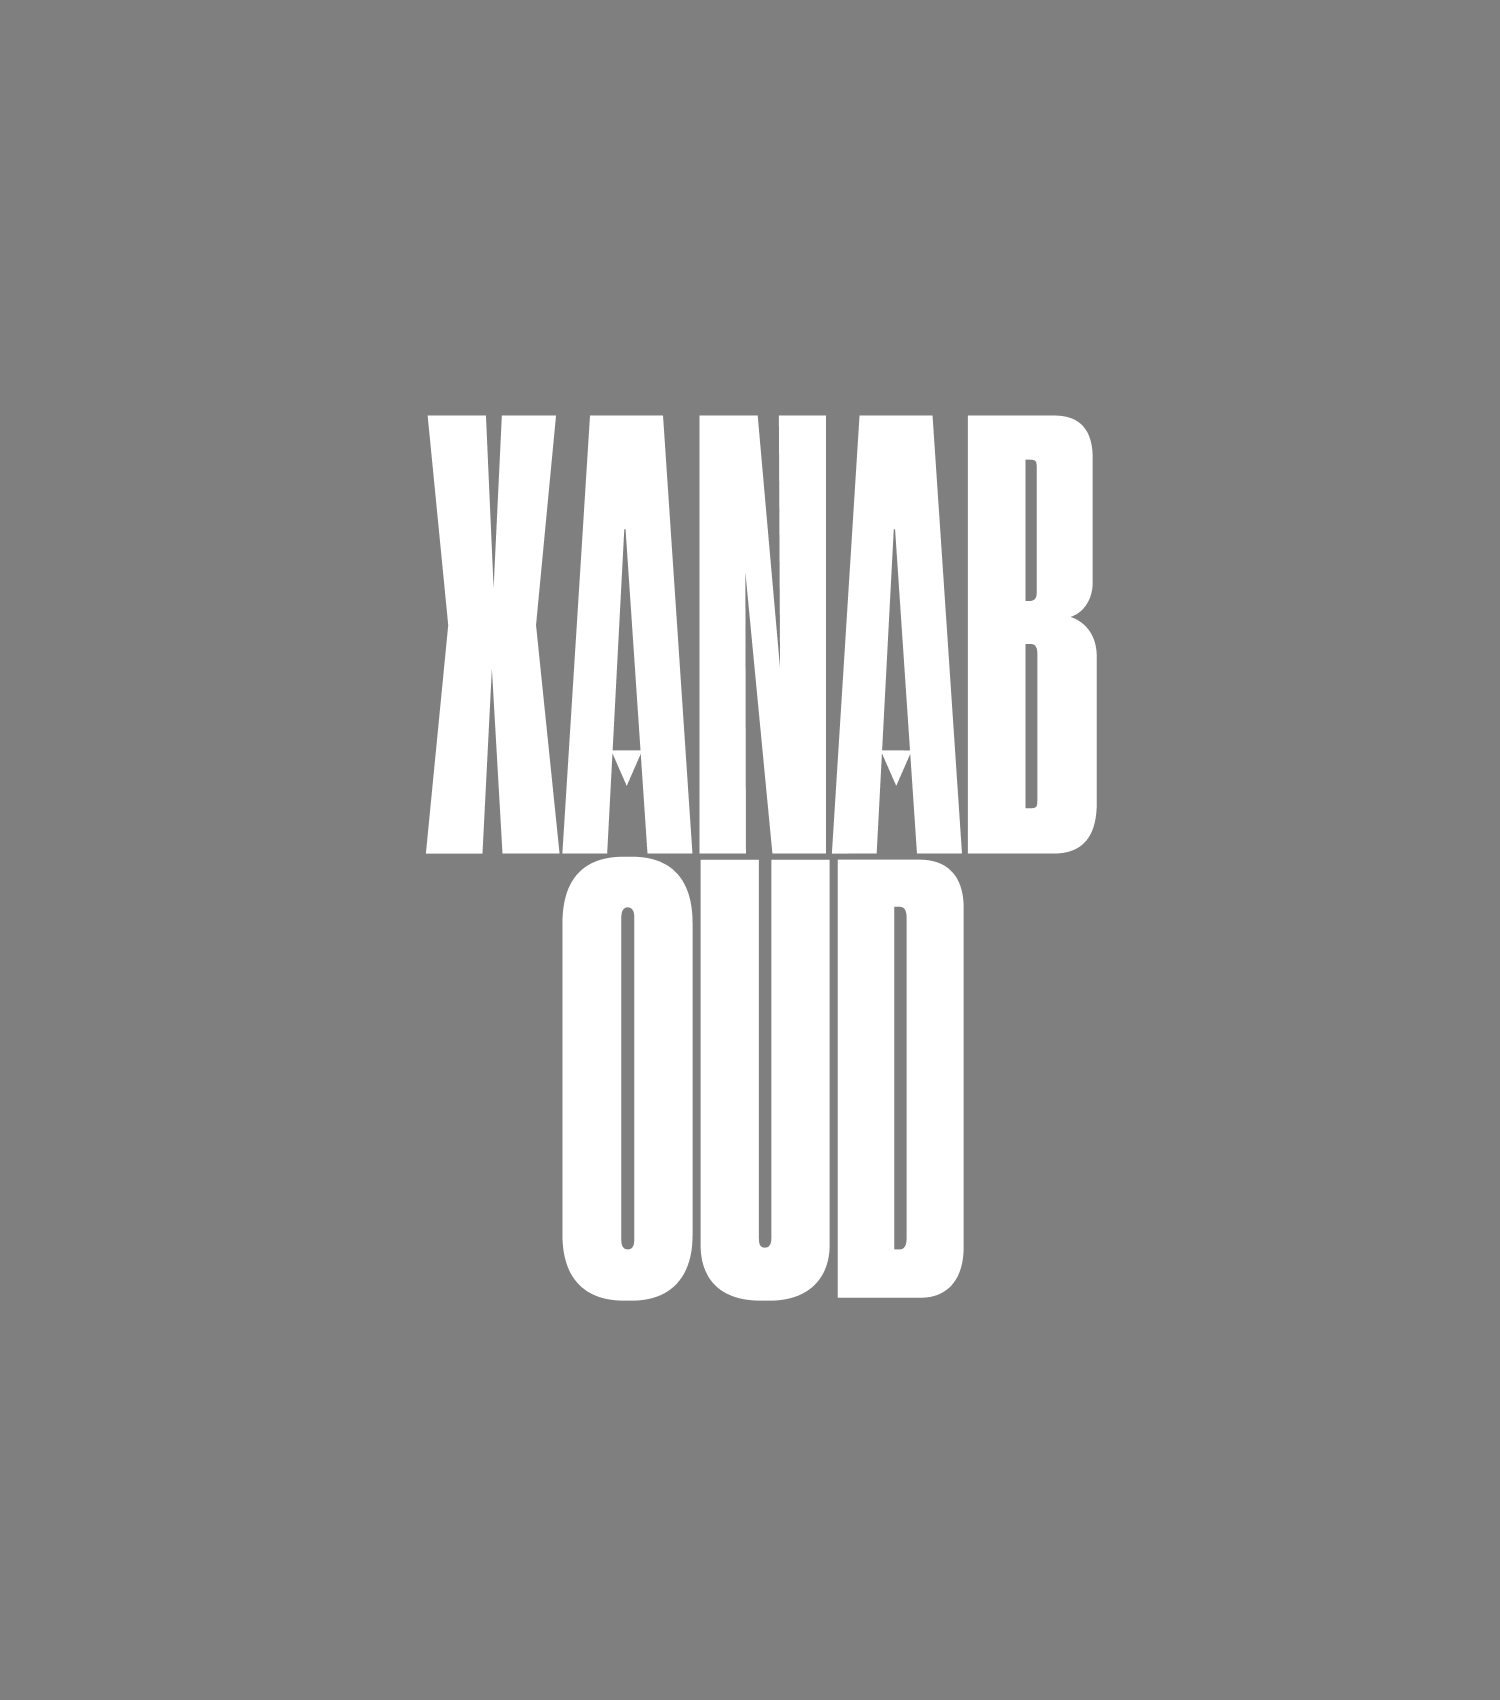 Xanaboud 50ml extrait de parfum by Perfumehead.